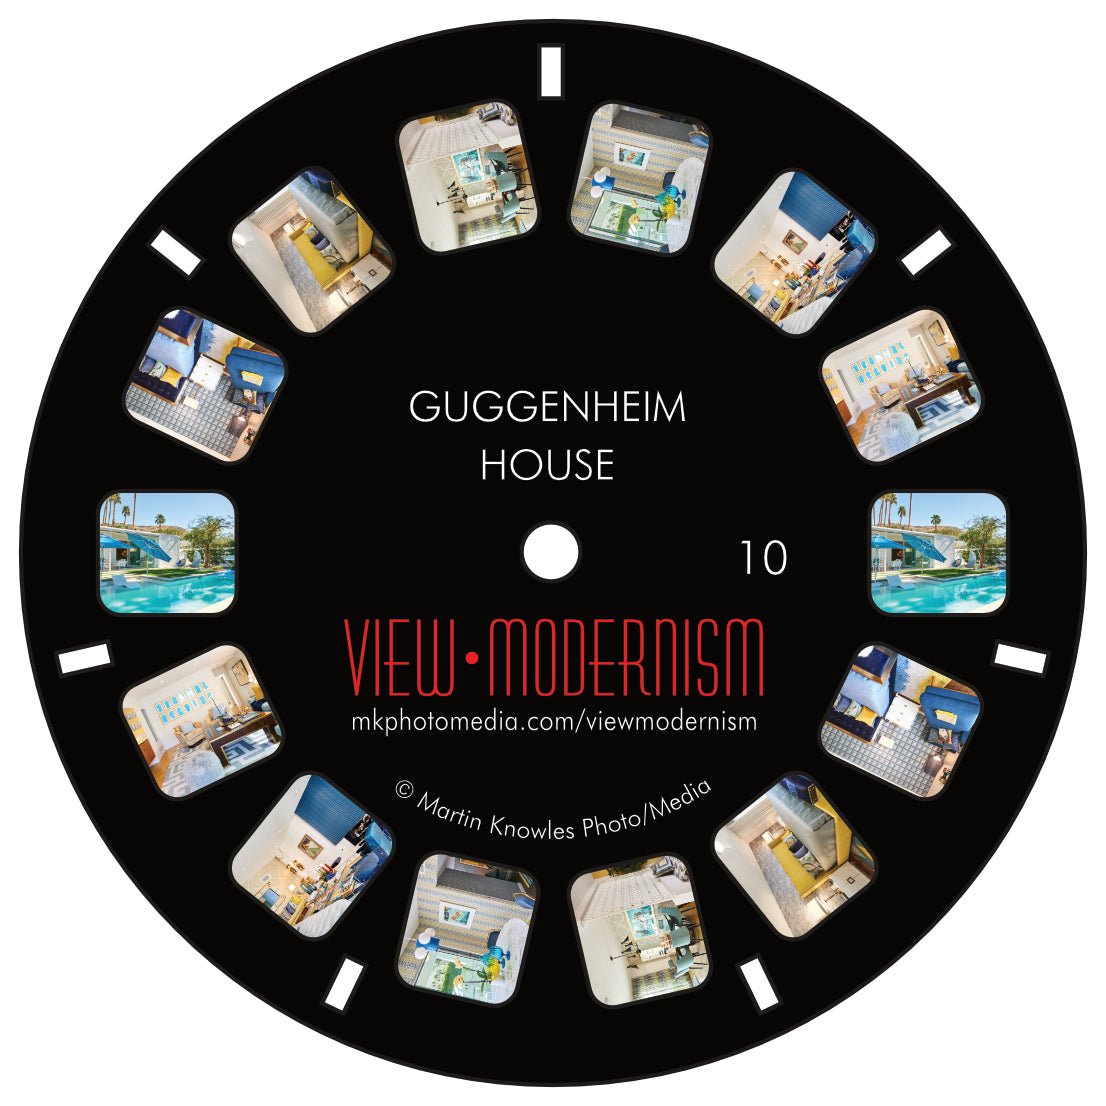 View Modernism Stereoscopic Reel - Guggenheim - Destination PSP